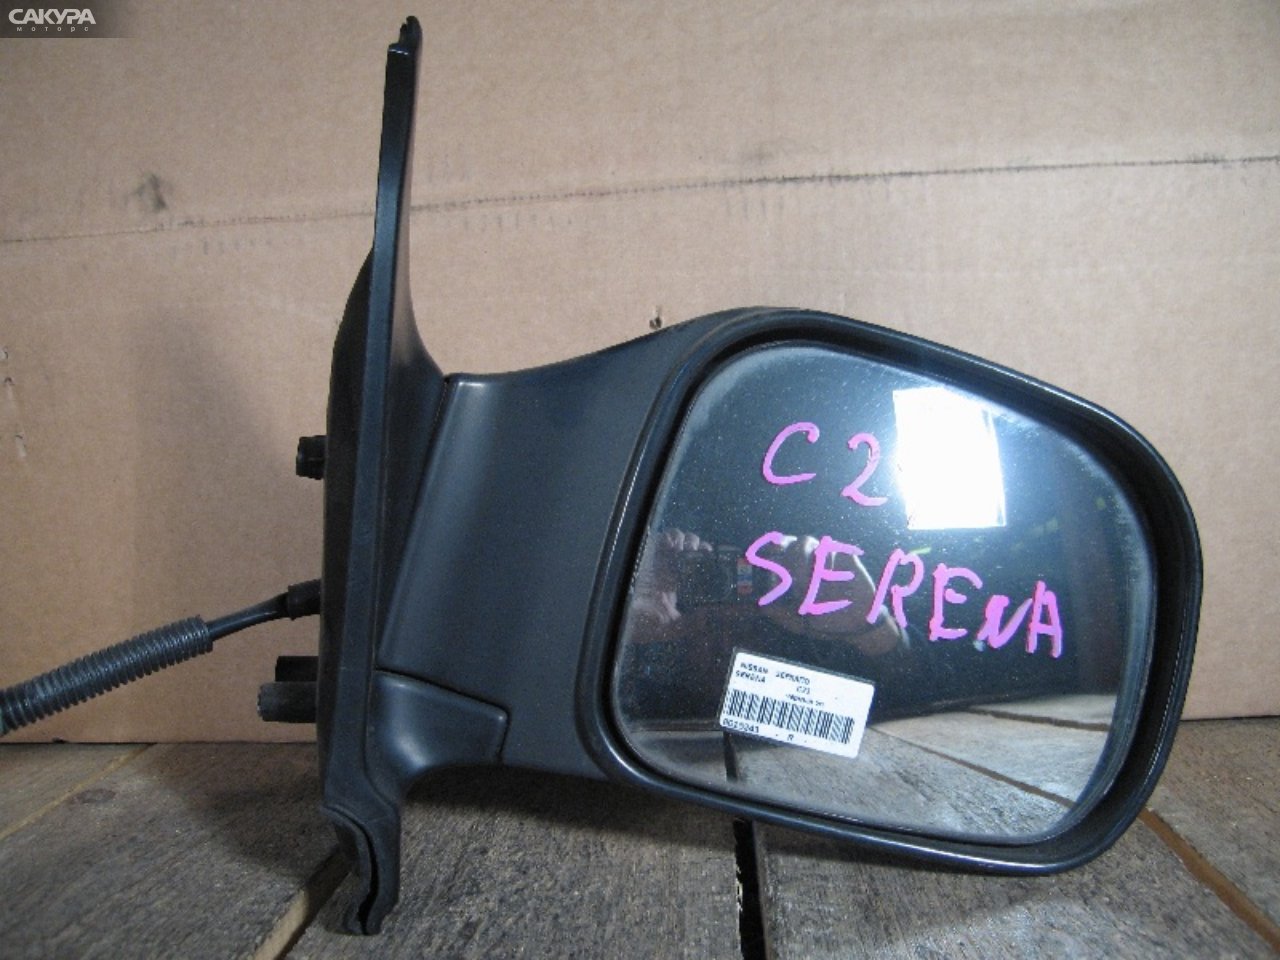 Зеркало боковое правое Nissan Serena KBC23: купить в Сакура Абакан.